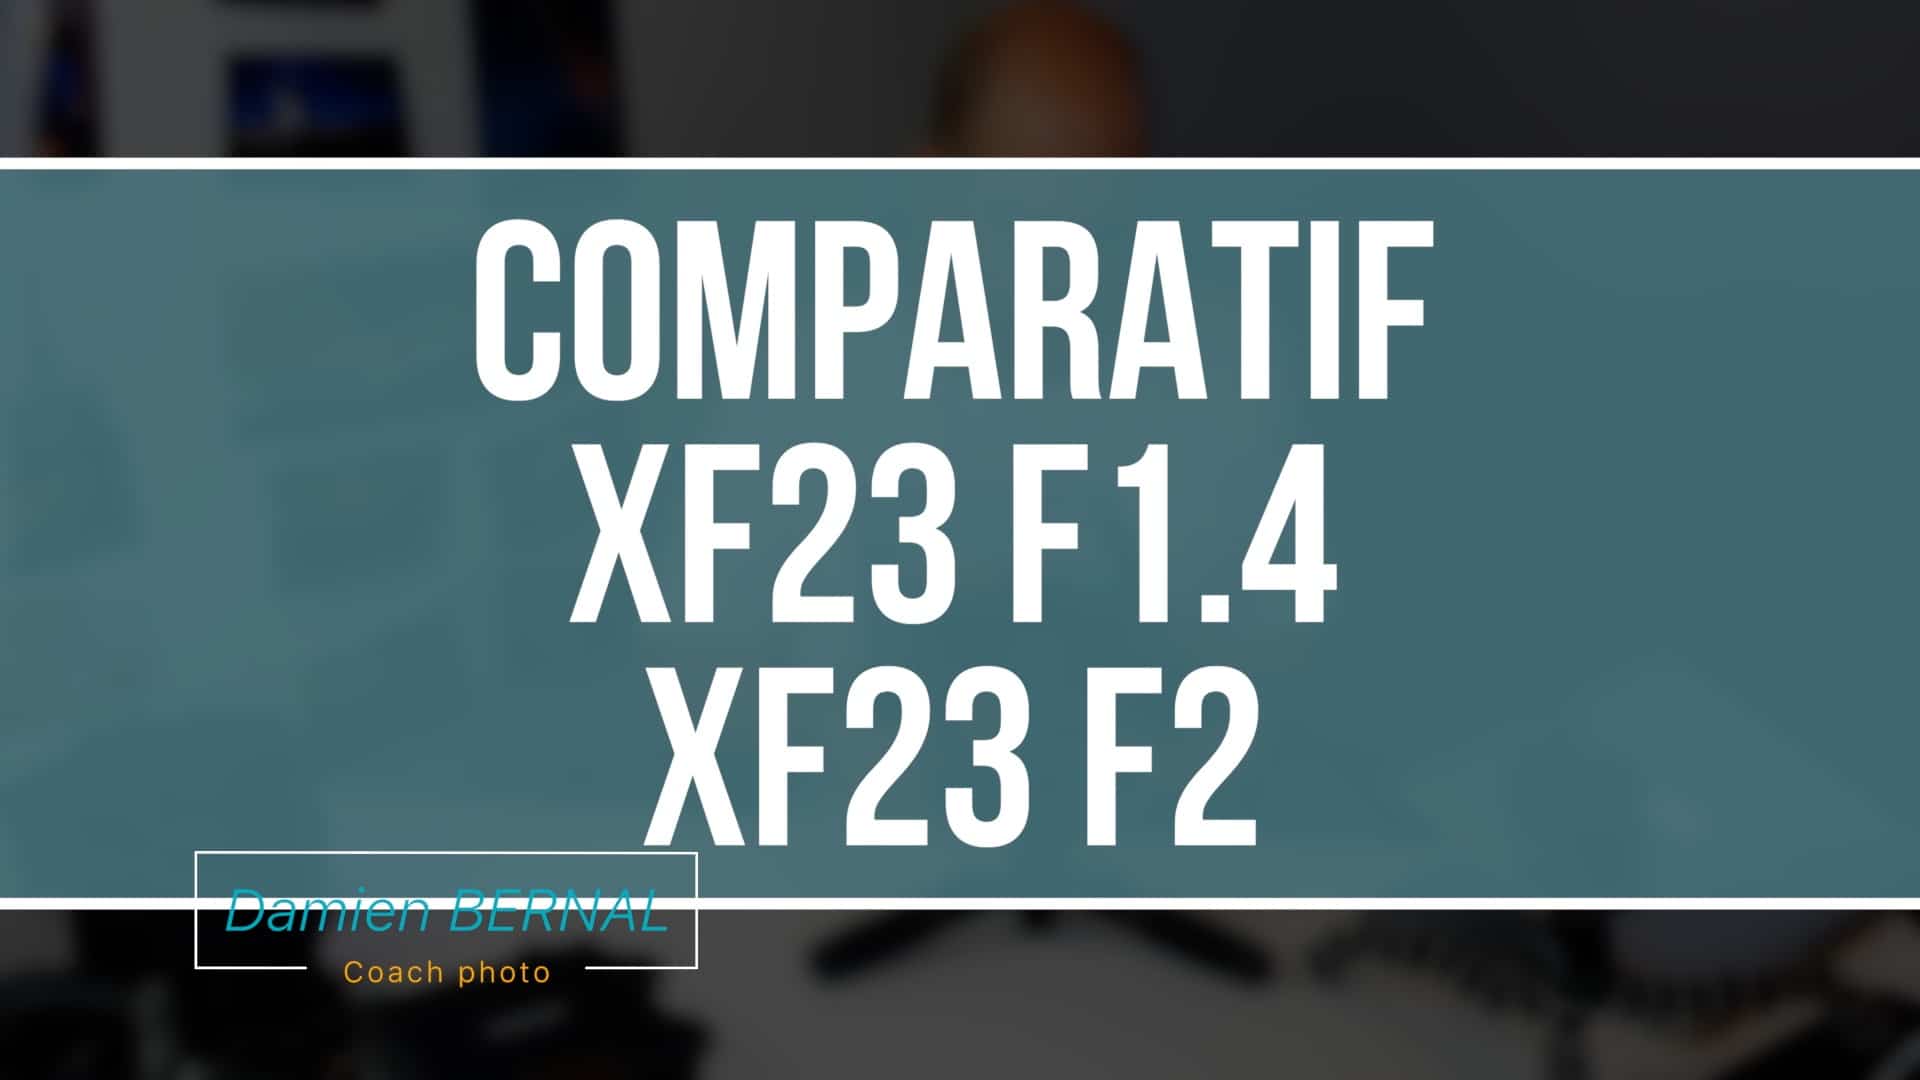 Comparatif XF 23 F2 vs XF 23 F1.4